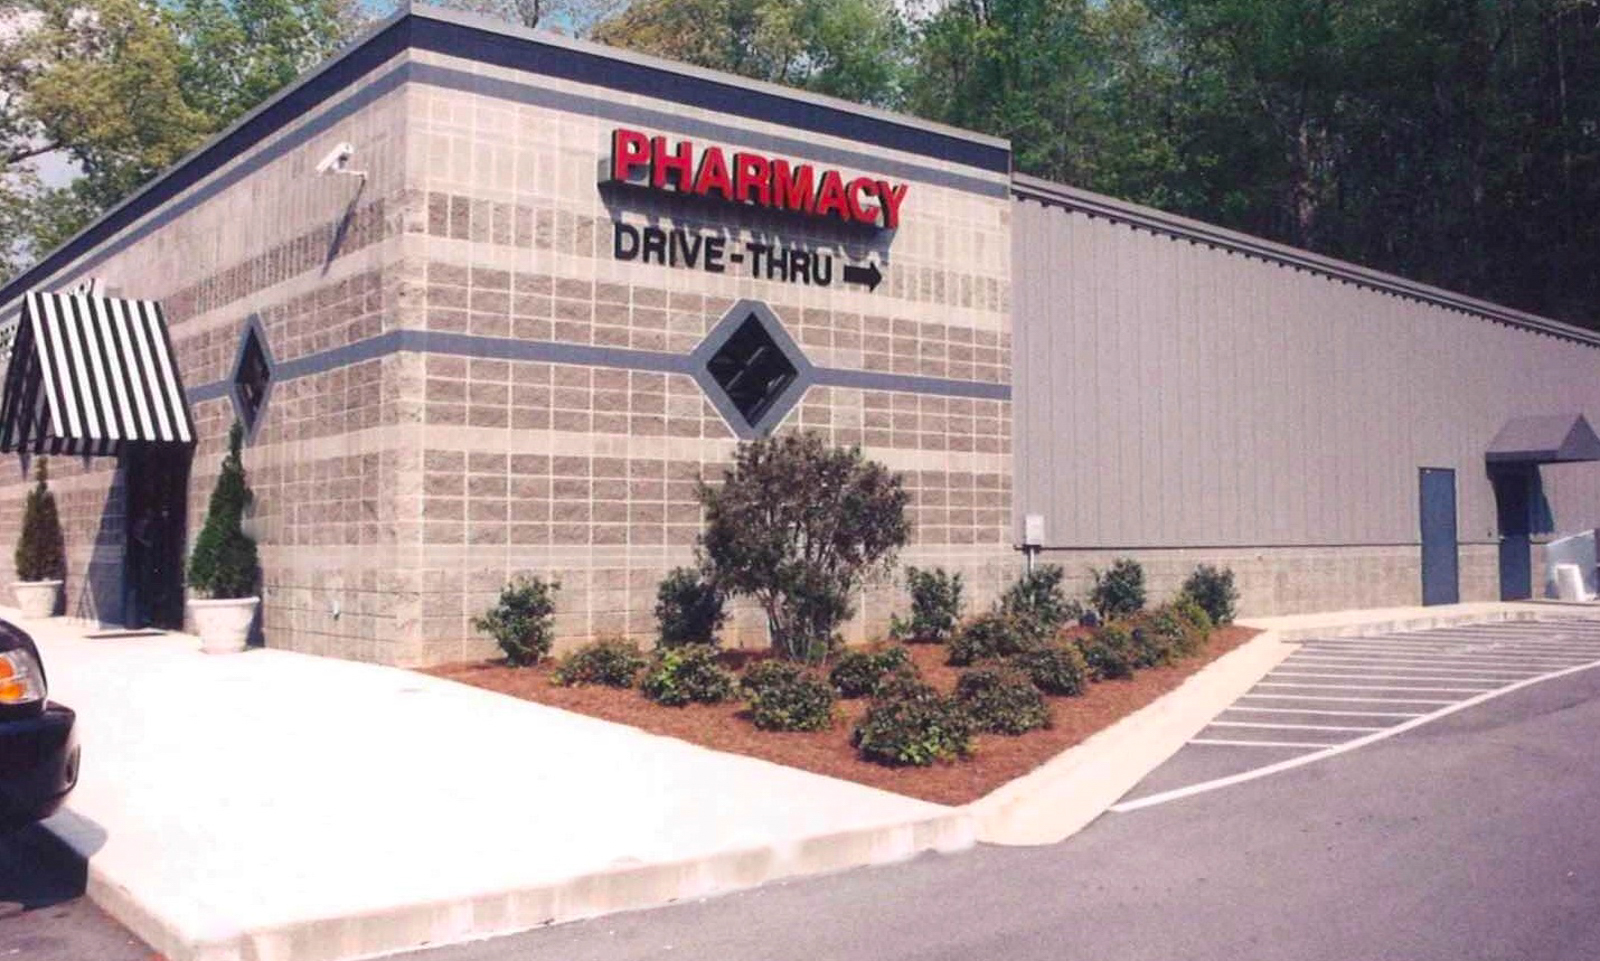 Carroll Pharmacy